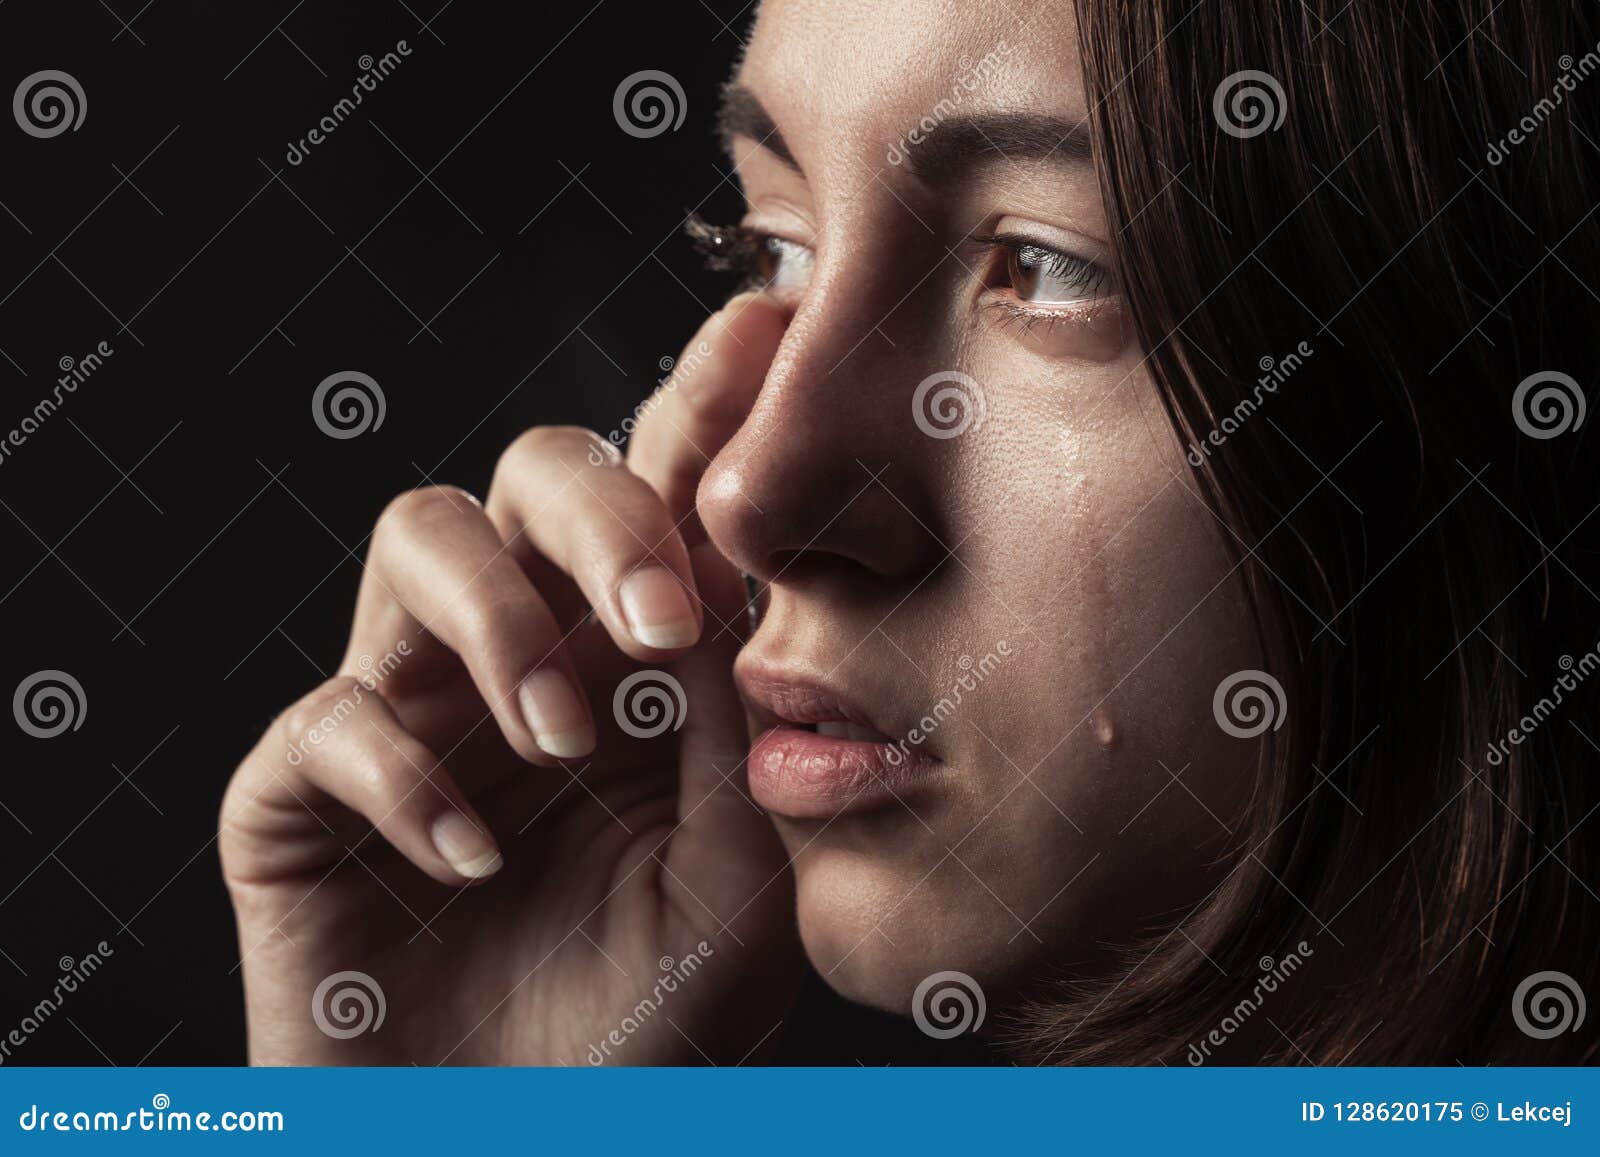 Sad crying girl stock image. Image of emotional, beauty - 128620175